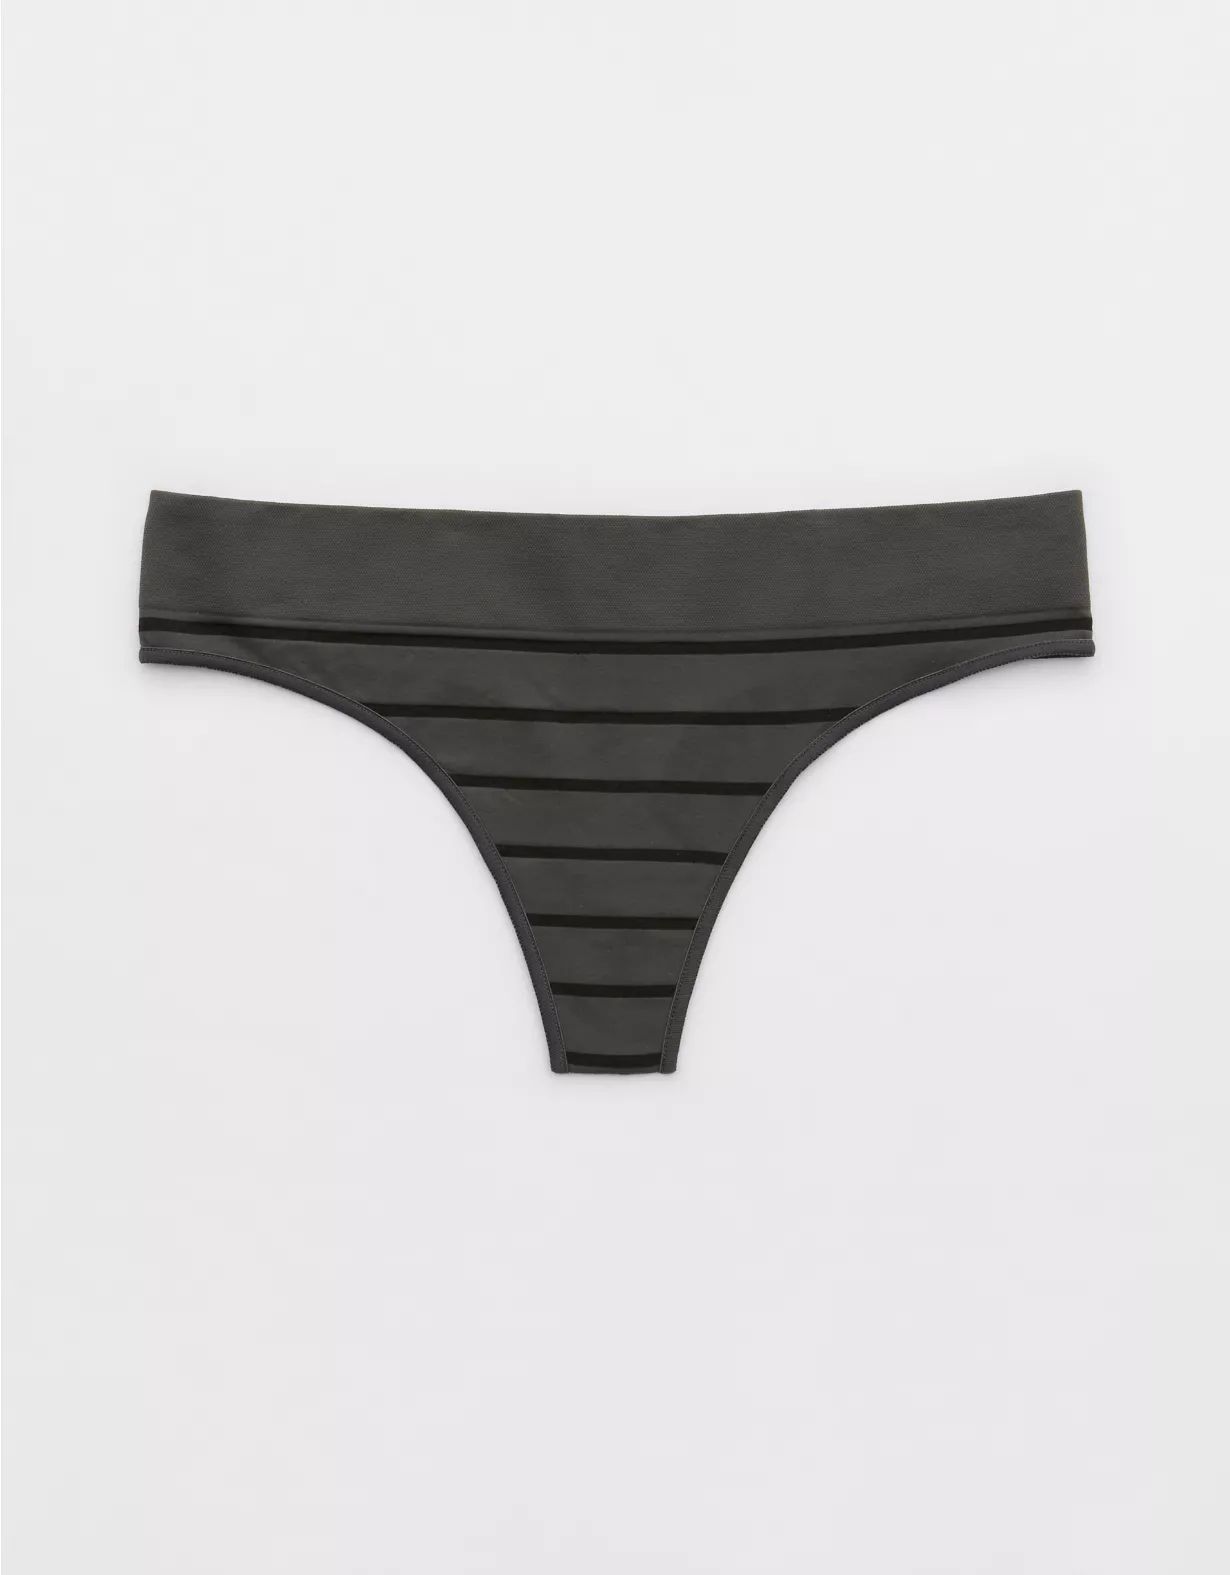 Superchill Seamless Stripe Thong Underwear | Aerie